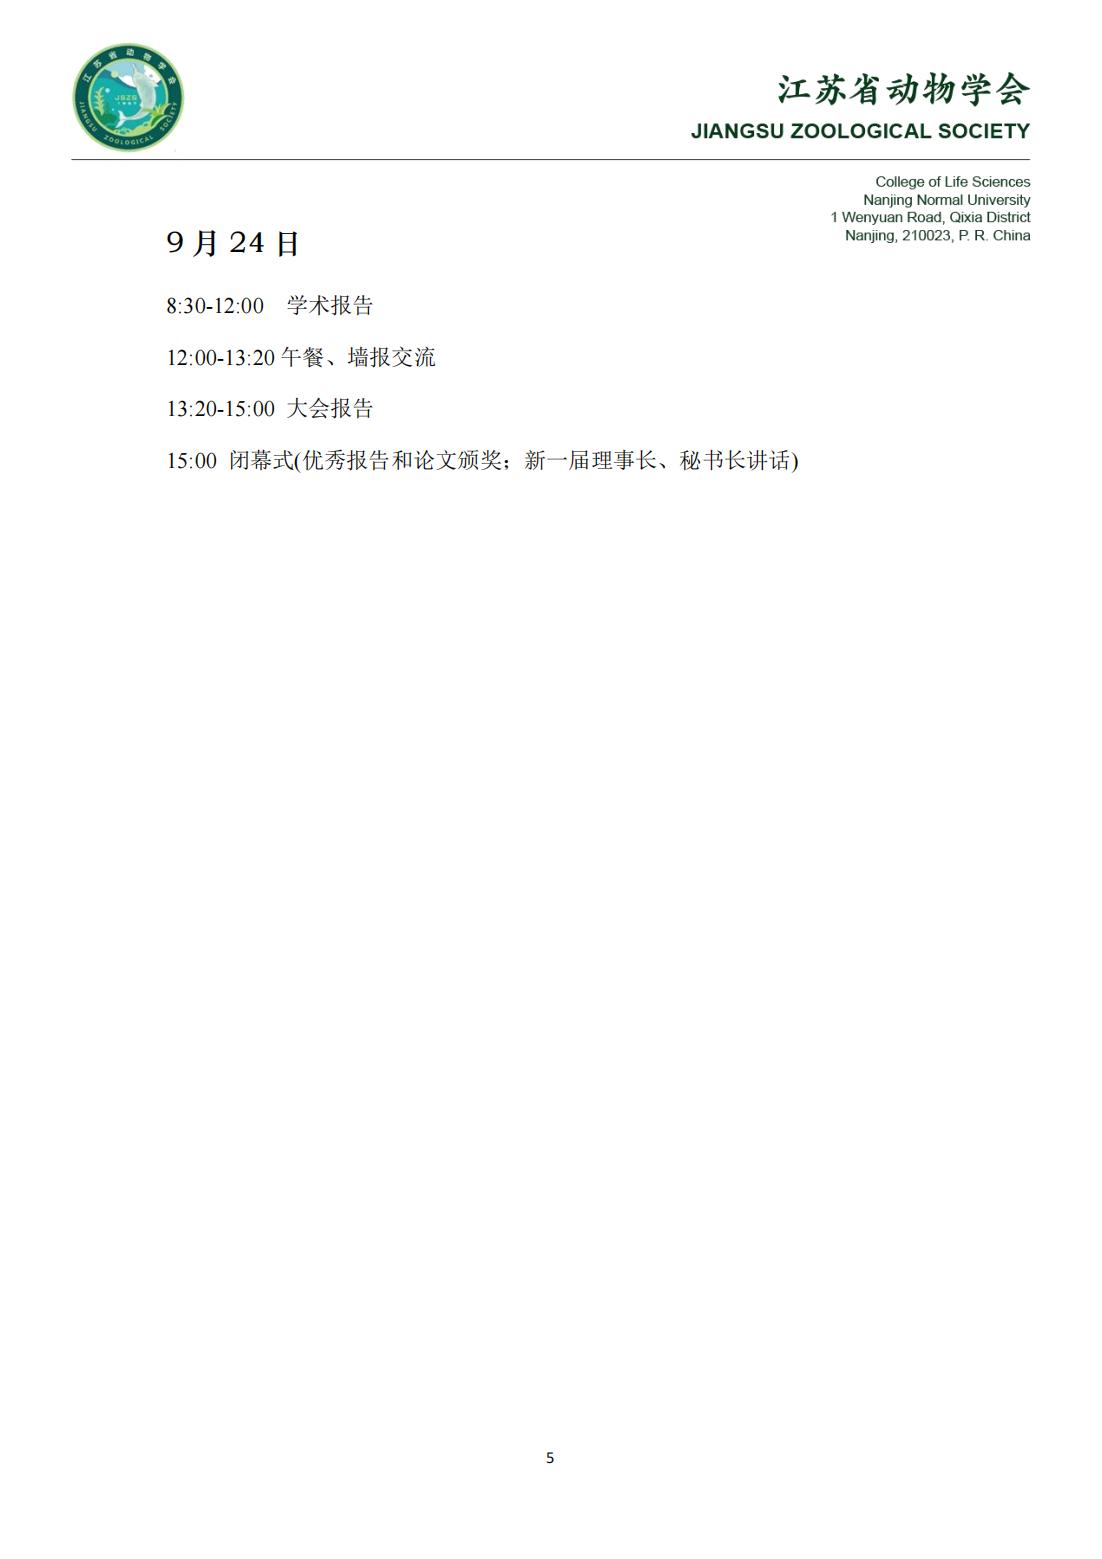 江苏省动物学会第十三届会员代表大会暨学术研讨会-第二轮正式通知_04.jpg